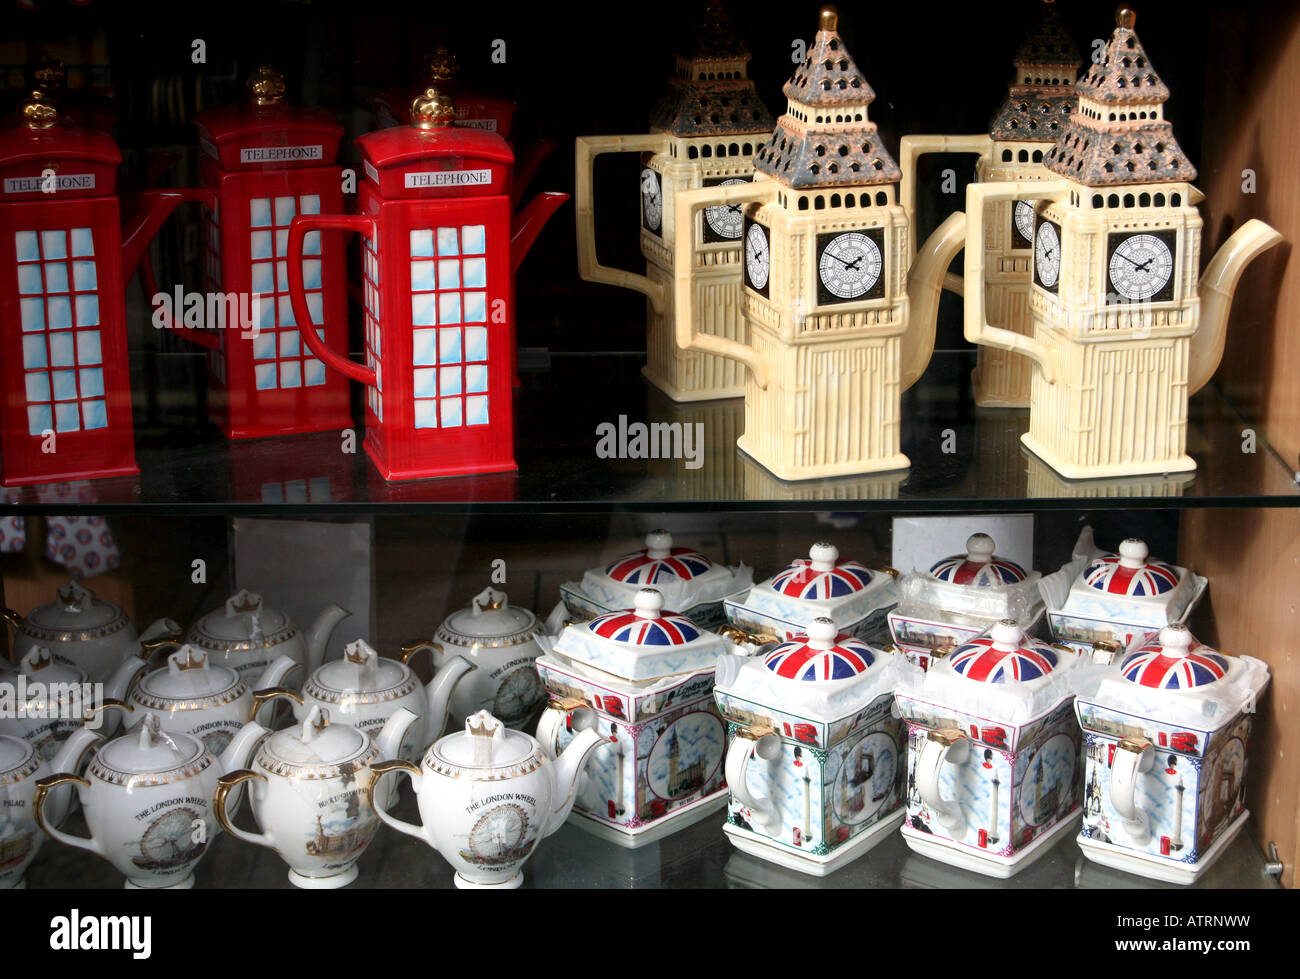 Souvenirs zum Verkauf in London einkaufen, Big Ben, London Eye und rote Telefon Box Teekannen Stockfoto